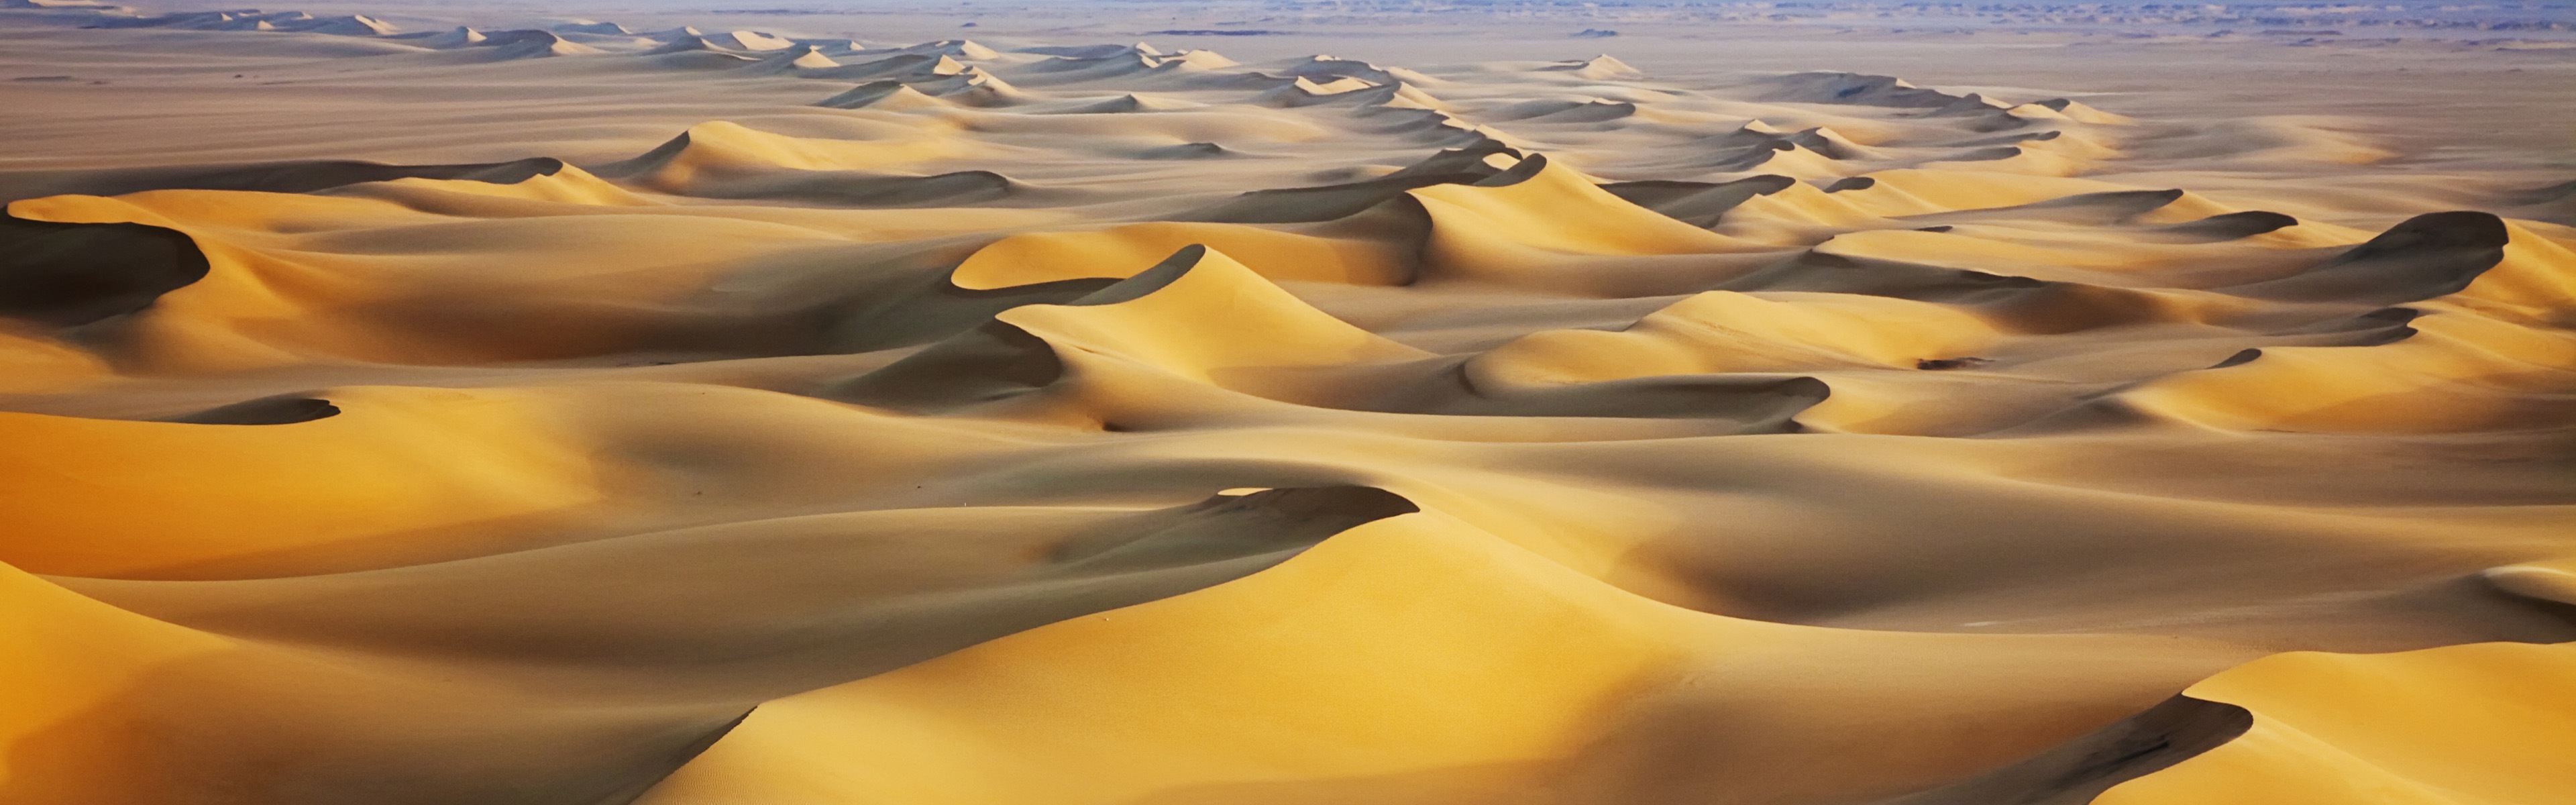 Les déserts chauds et arides, de Windows 8 fonds d'écran widescreen panoramique #4 - 3840x1200